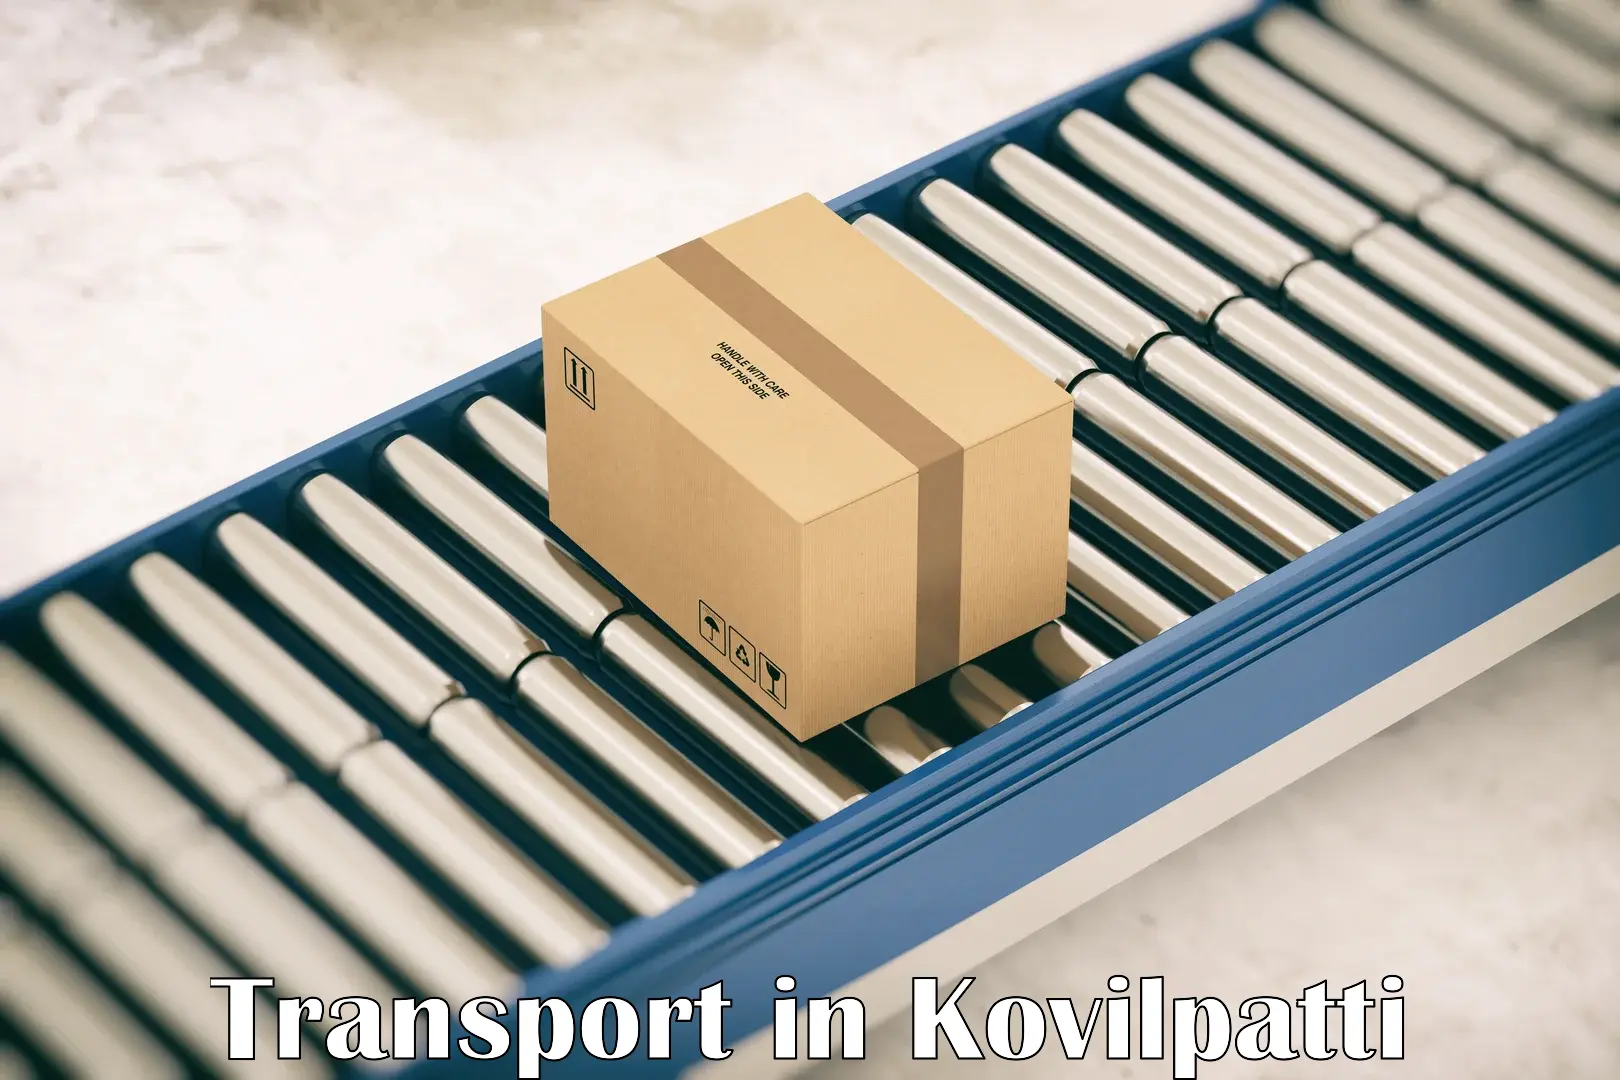 Online transport booking in Kovilpatti